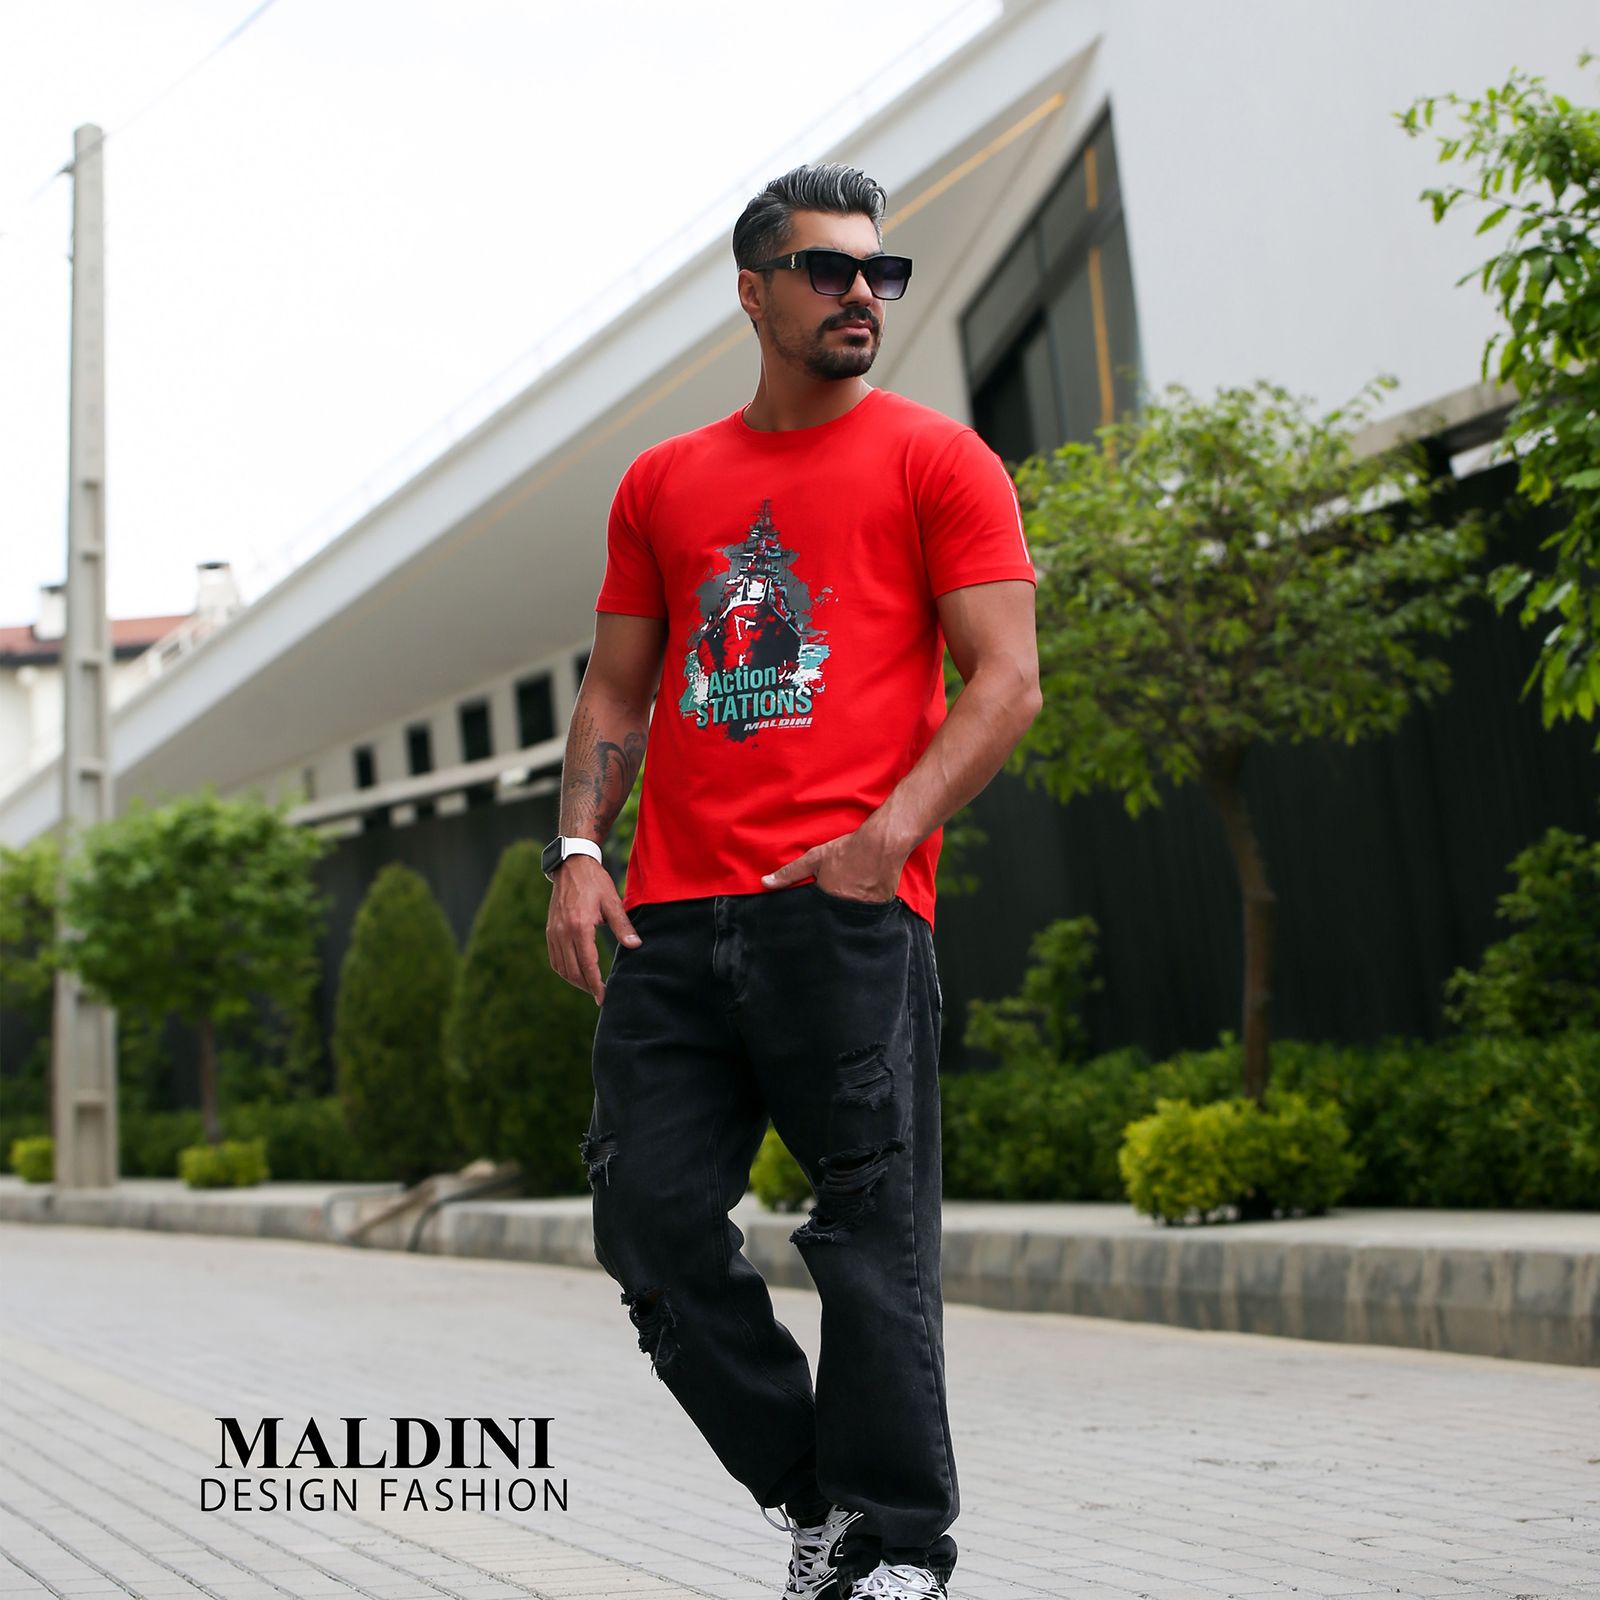 تی شرت آستین کوتاه مردانه مالدینی مدل T-108 -  - 9